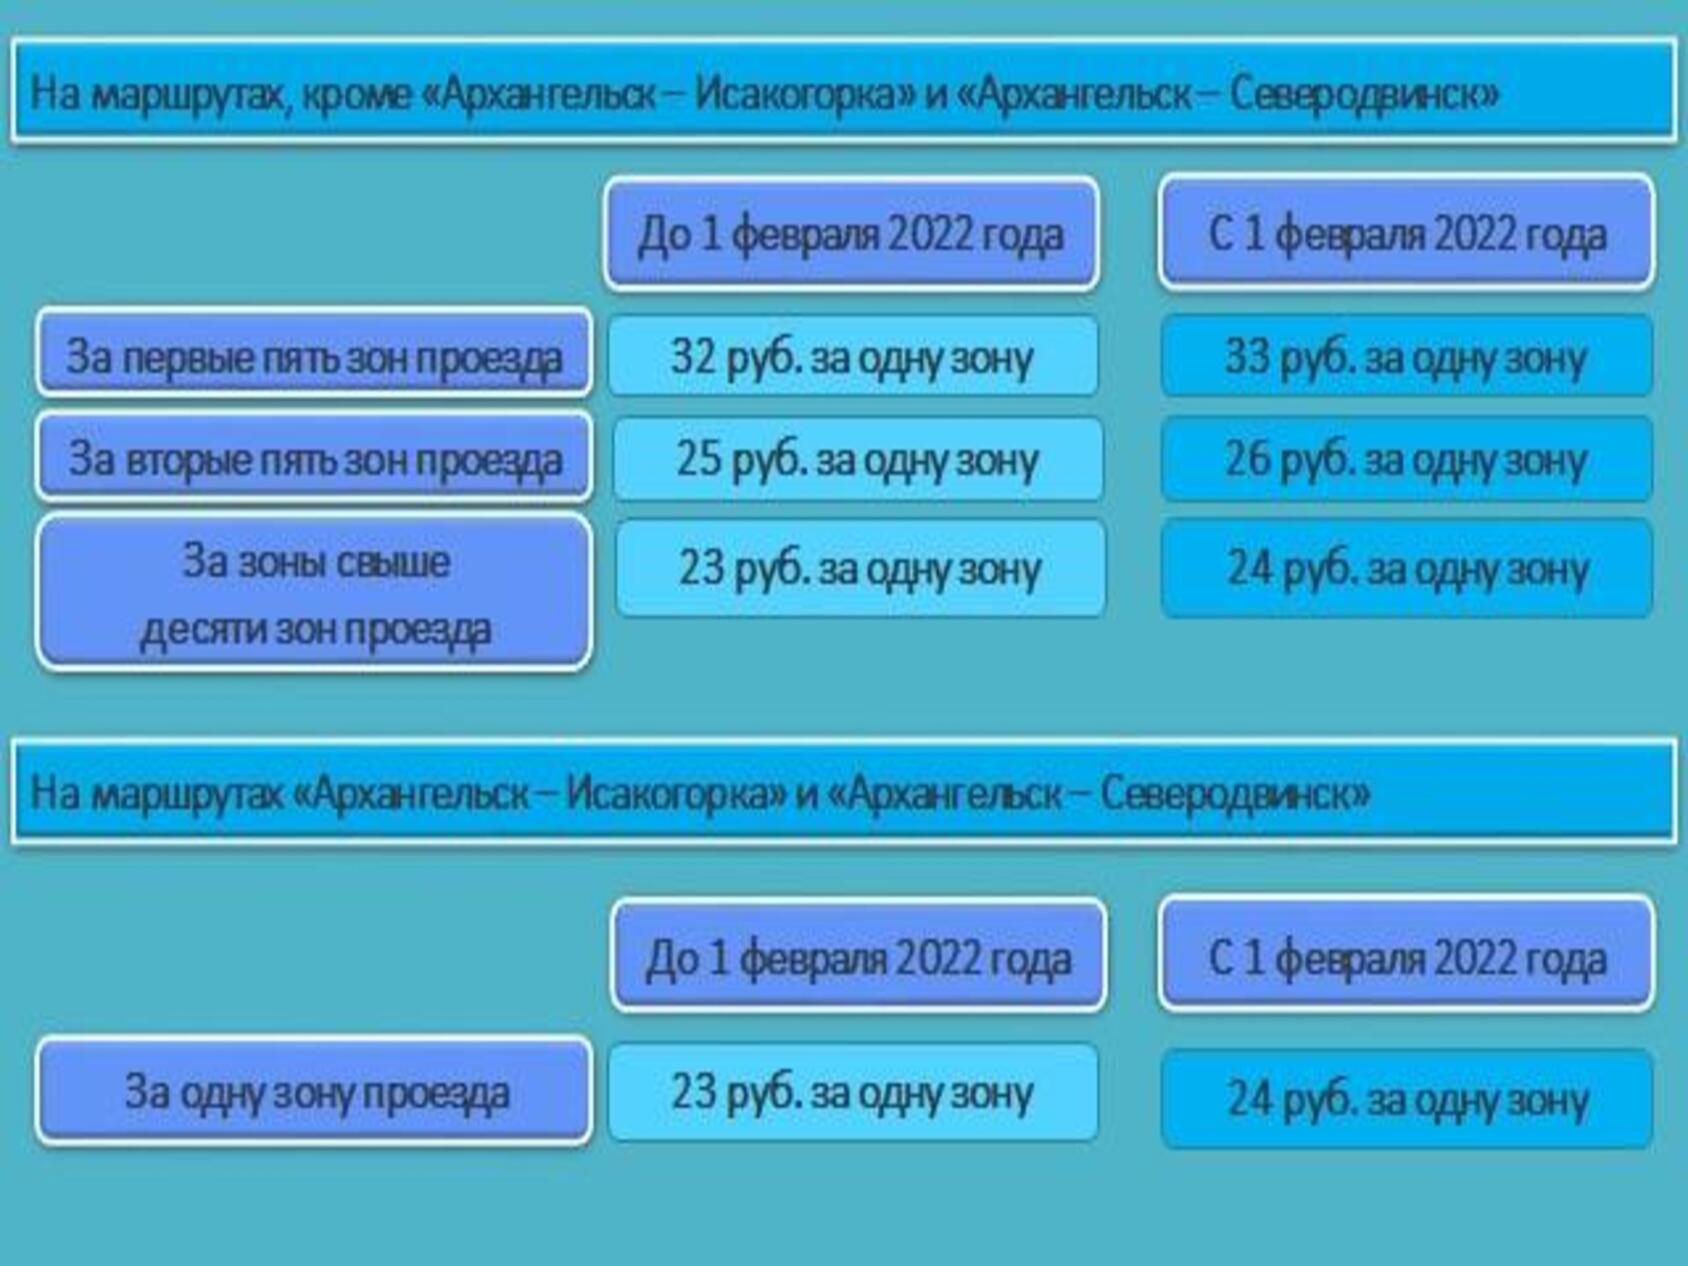 Инфографика: агентство по тарифам и цена Архангельской области